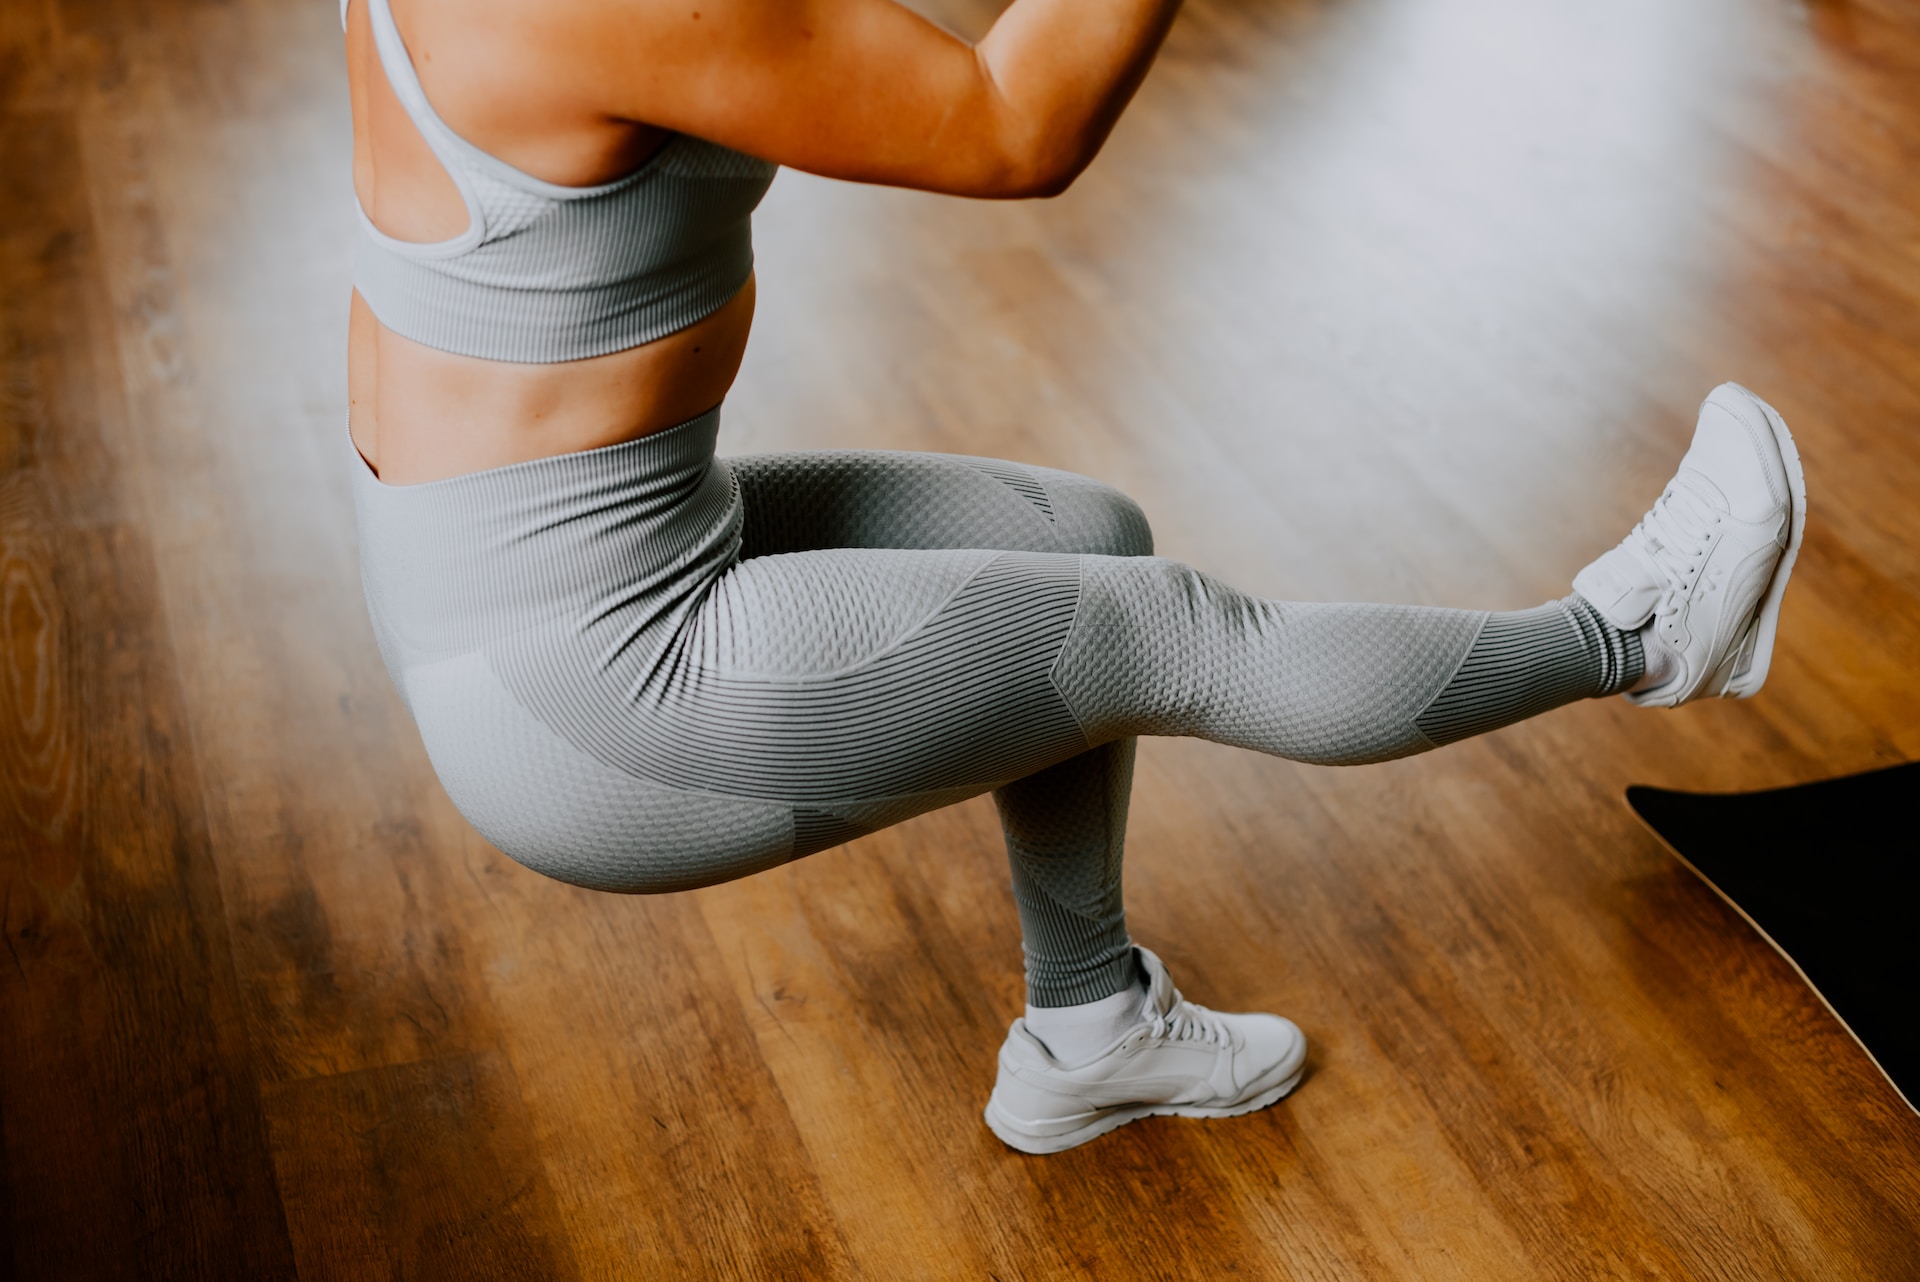 Comment faire le squat sans se blesser aux genoux ?